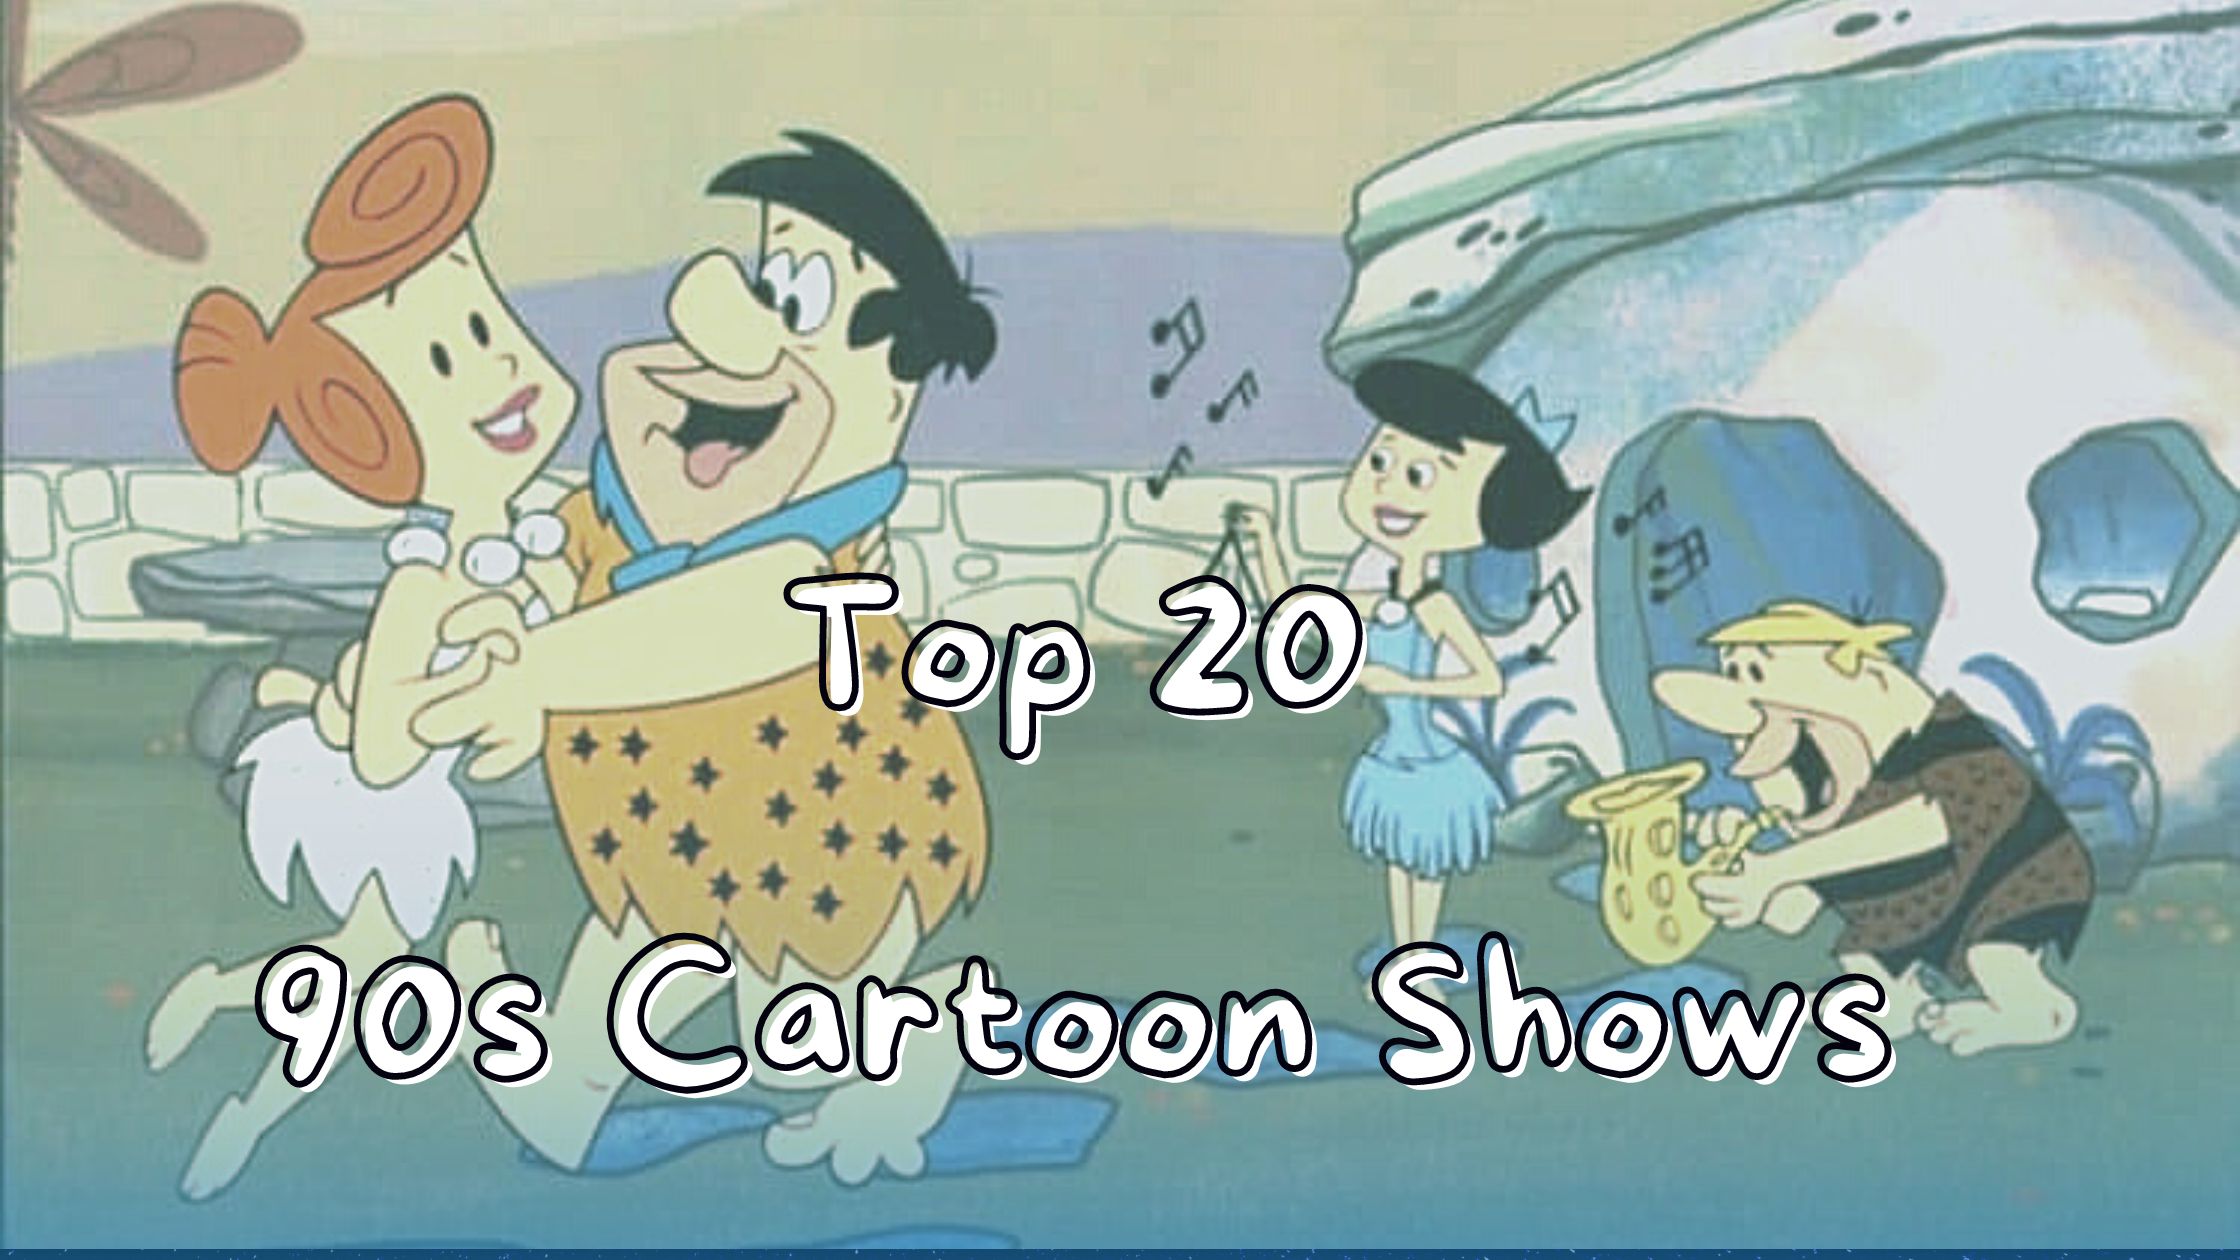 90s Cartoon Show